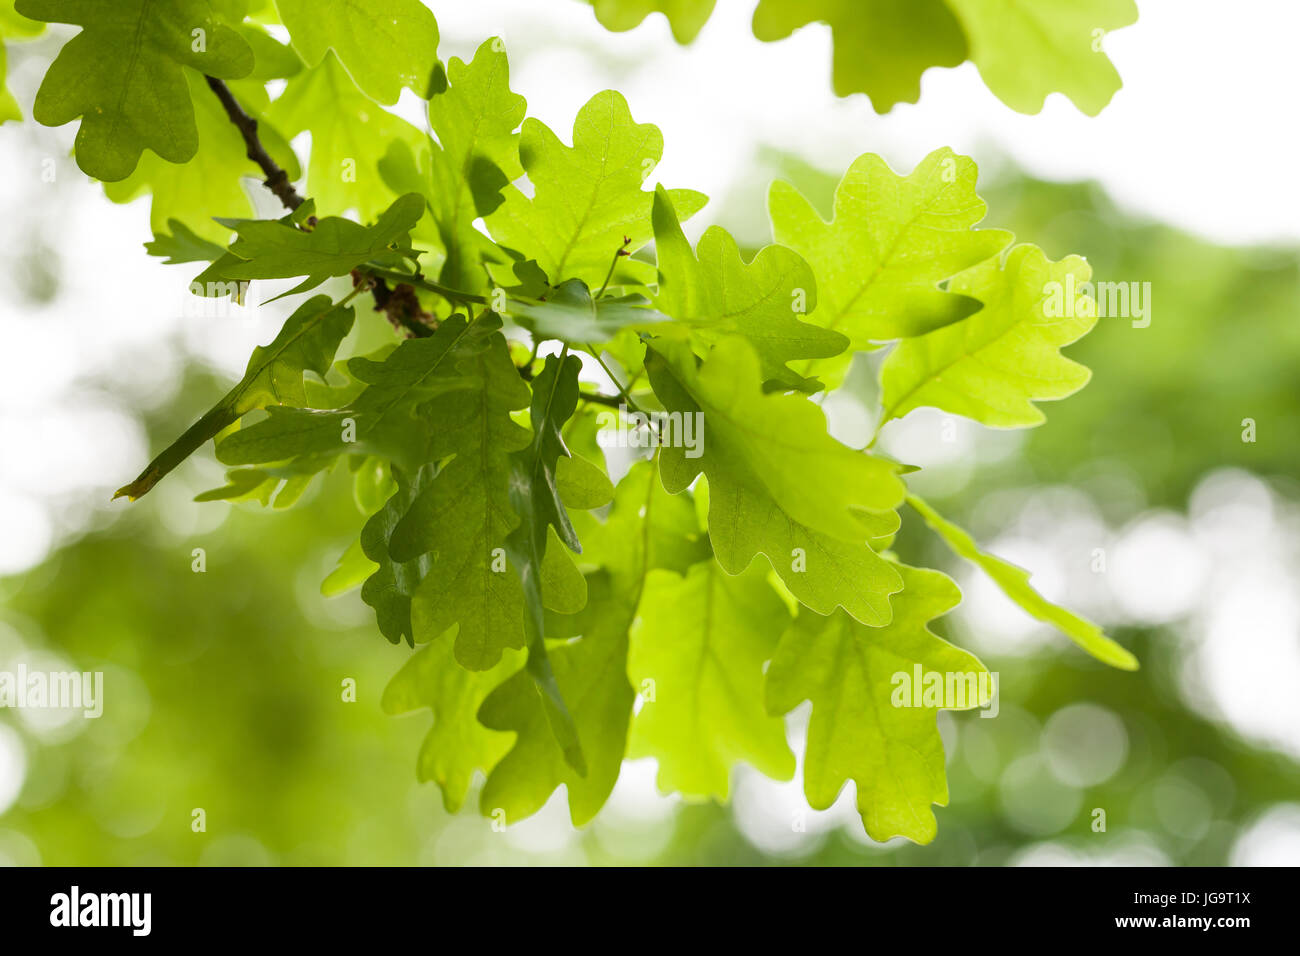 Fresco verde quercia lascia su sfondo bianco. Natural close-up foto verticale con il fuoco selettivo Foto Stock